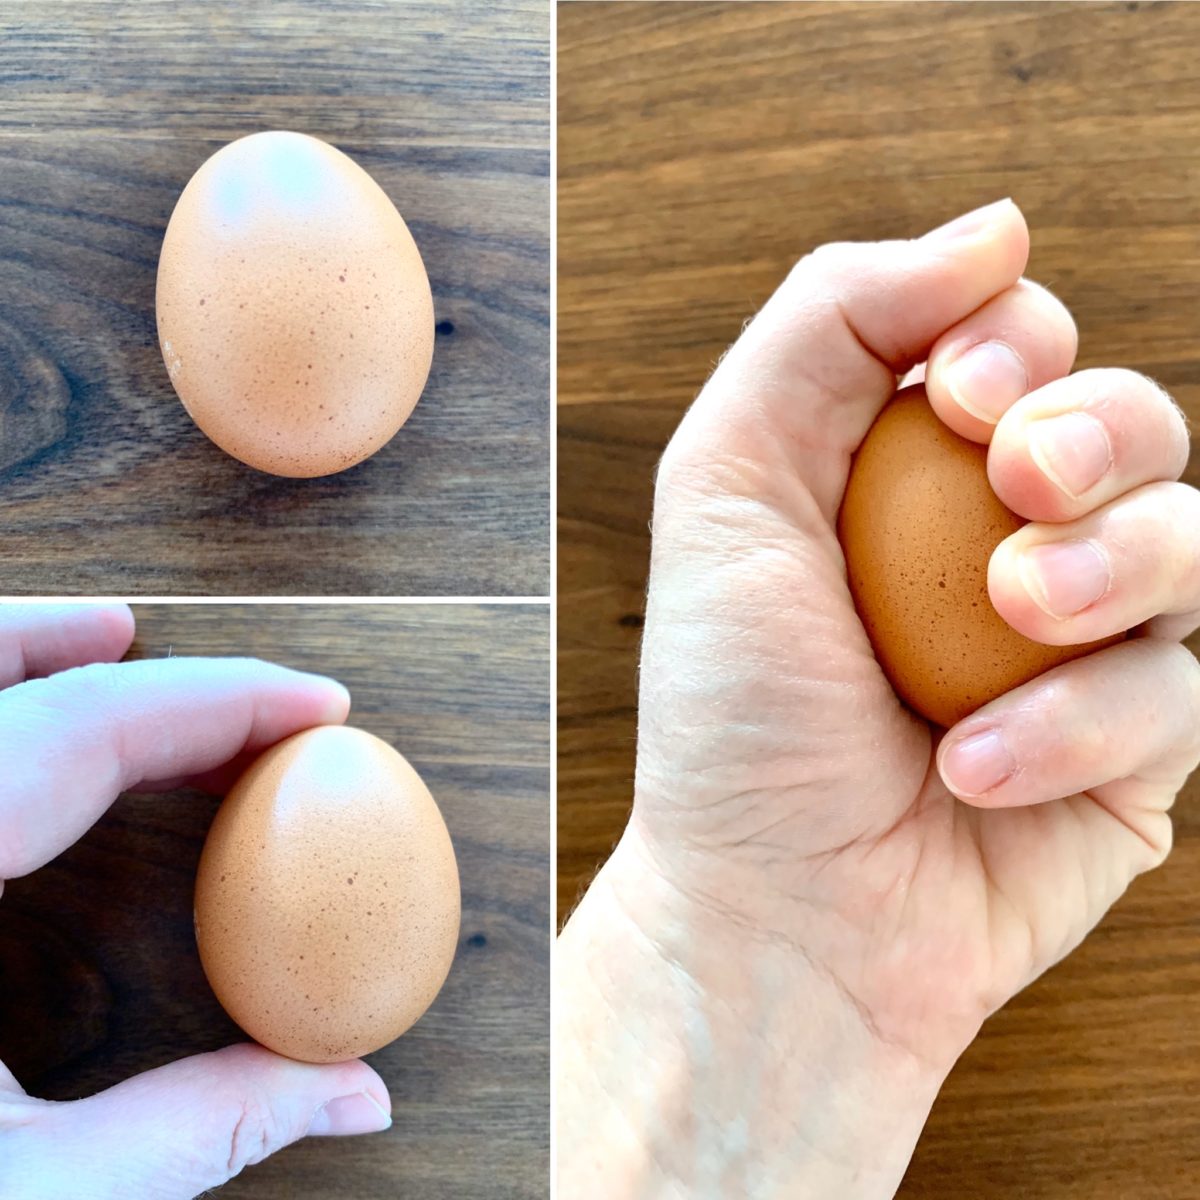 SCHNELL GEFORSCHT: Kräftemessen mit einem Ei